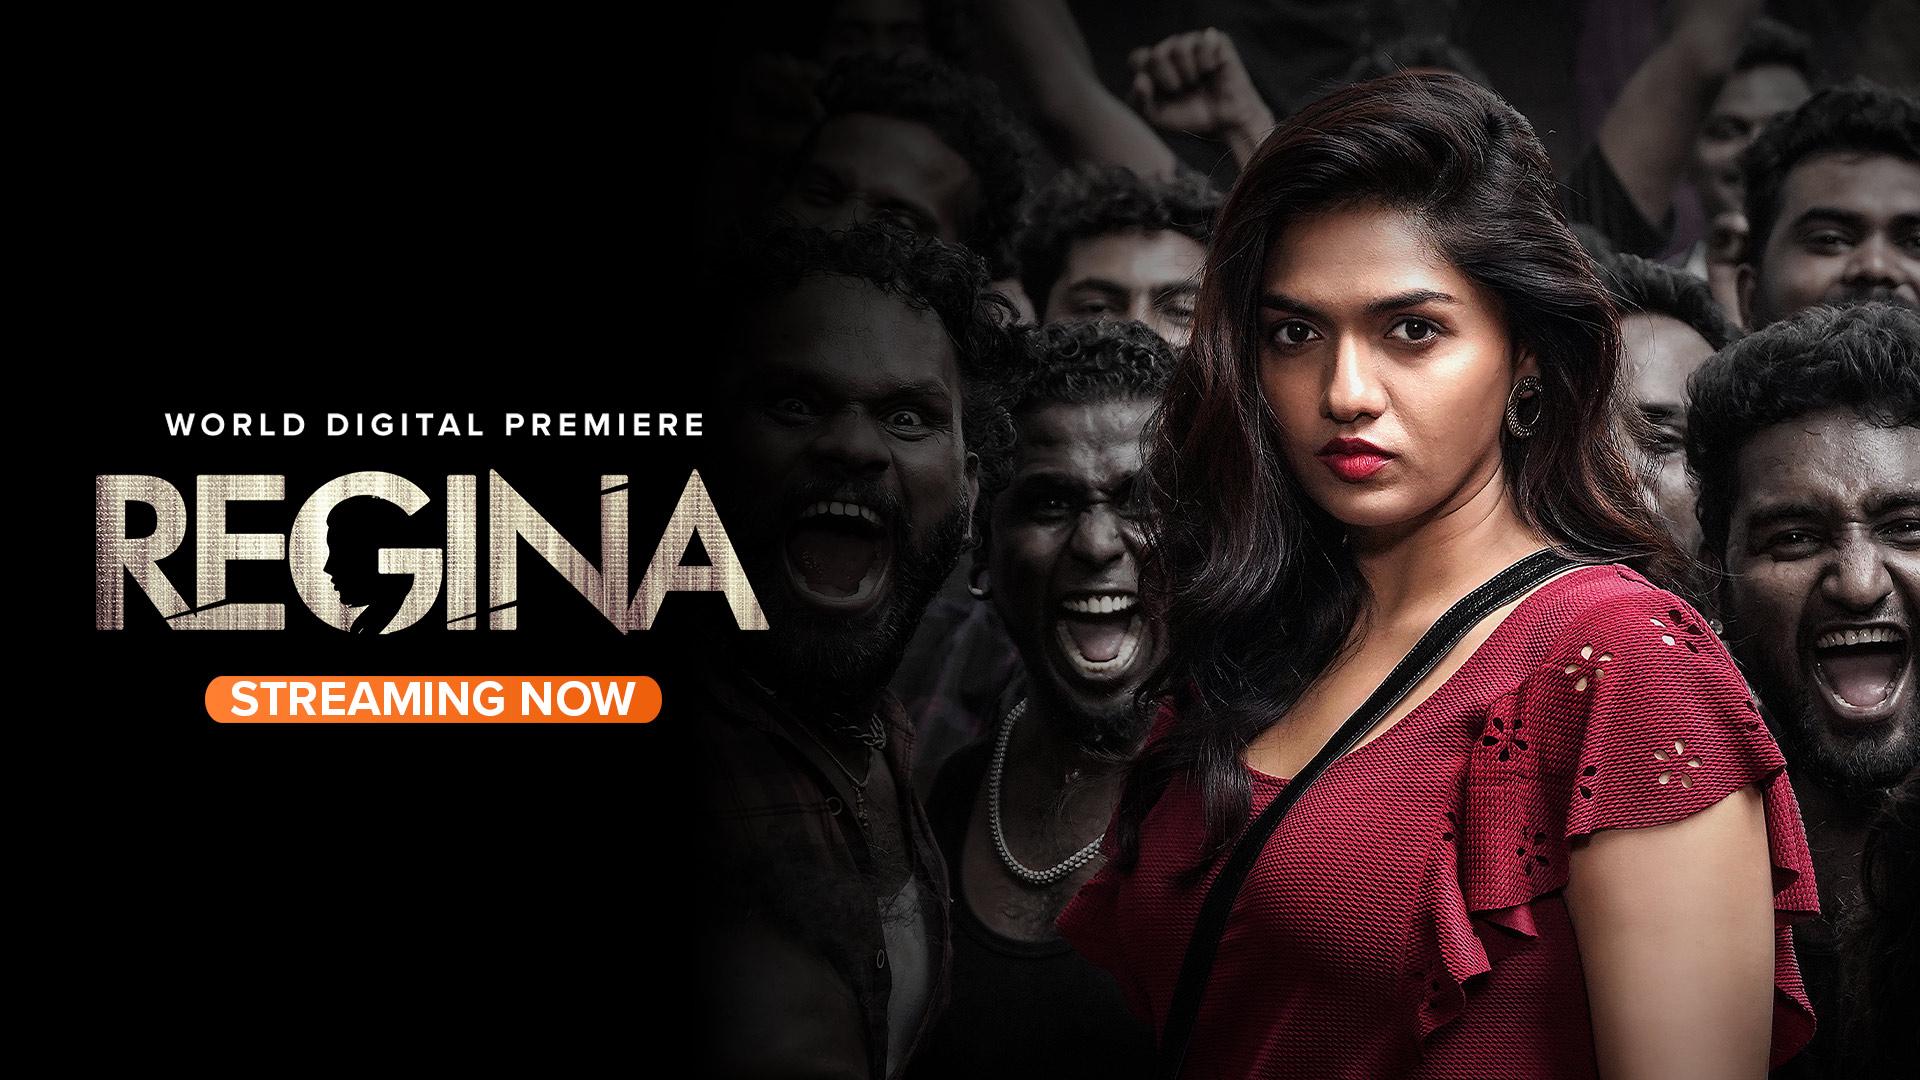 regina tamil movie review in tamil